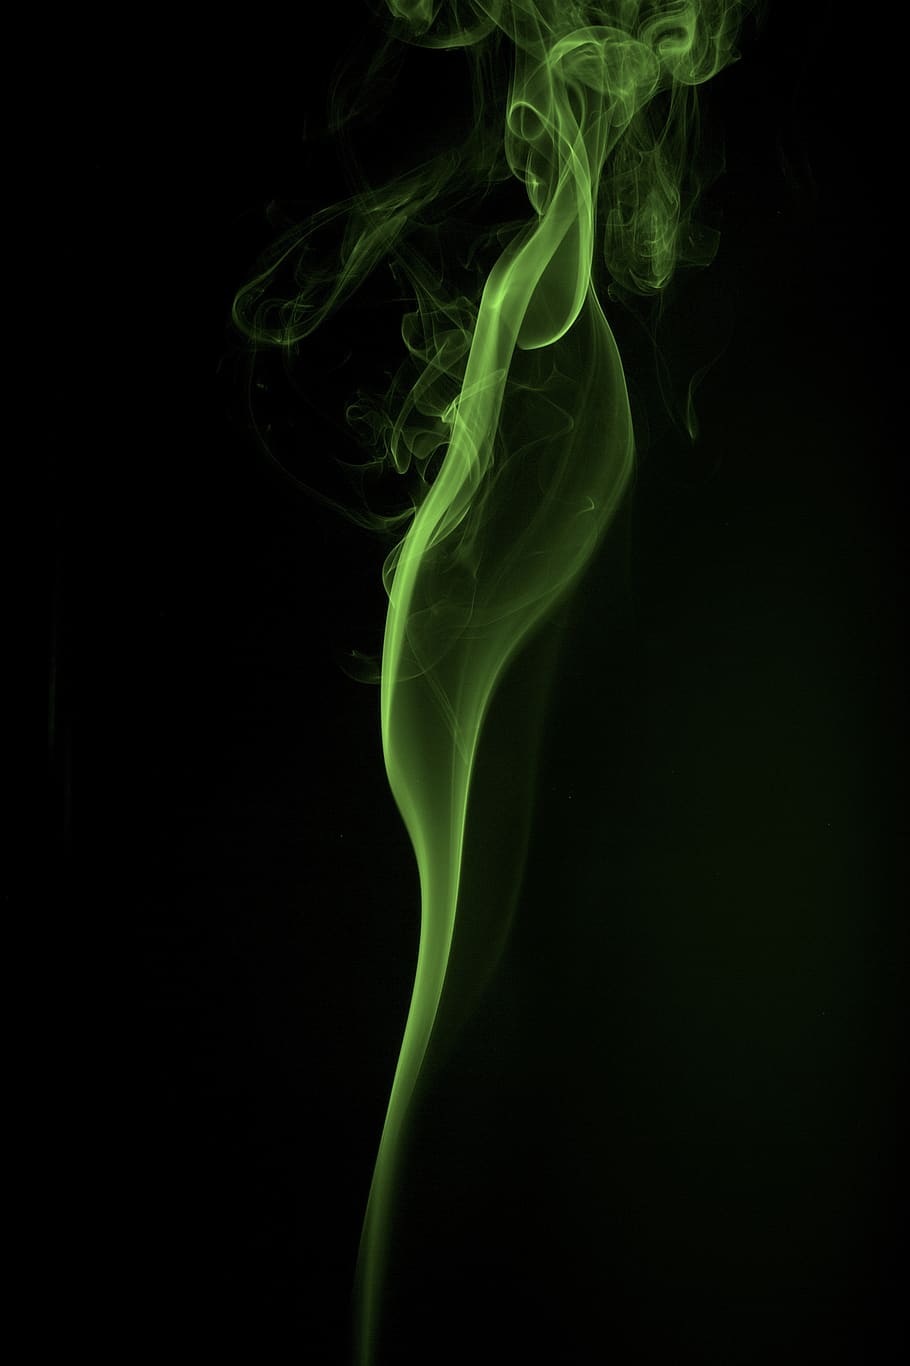 humo, arte, cigarrillo, humo - estructura física, foto de estudio, fondo negro, movimiento, color verde, ninguna persona, primer plano